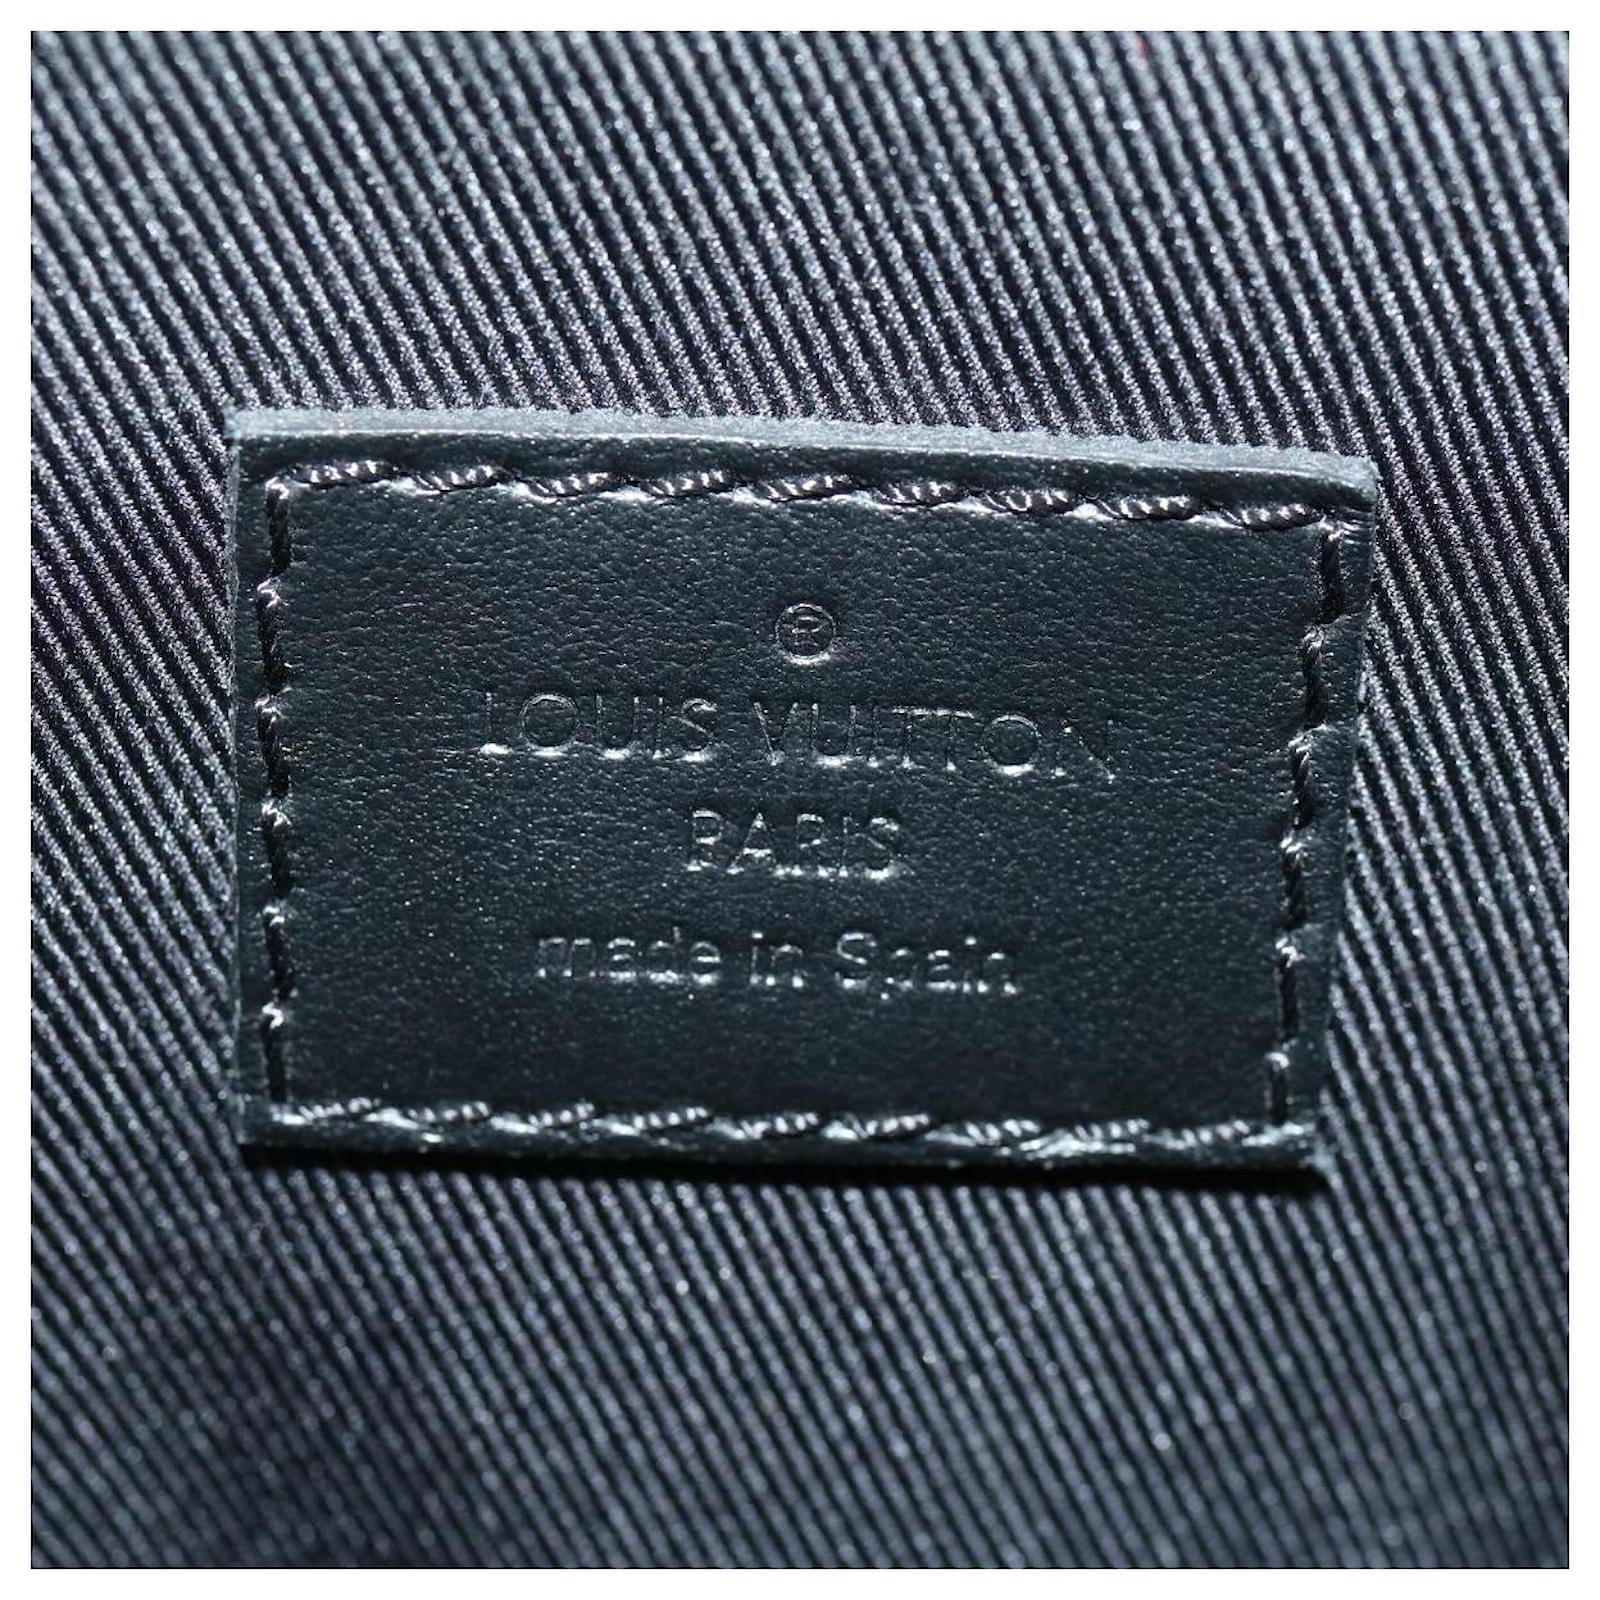 Shop Louis Vuitton Backpack trio (M45538) by luxurysuite